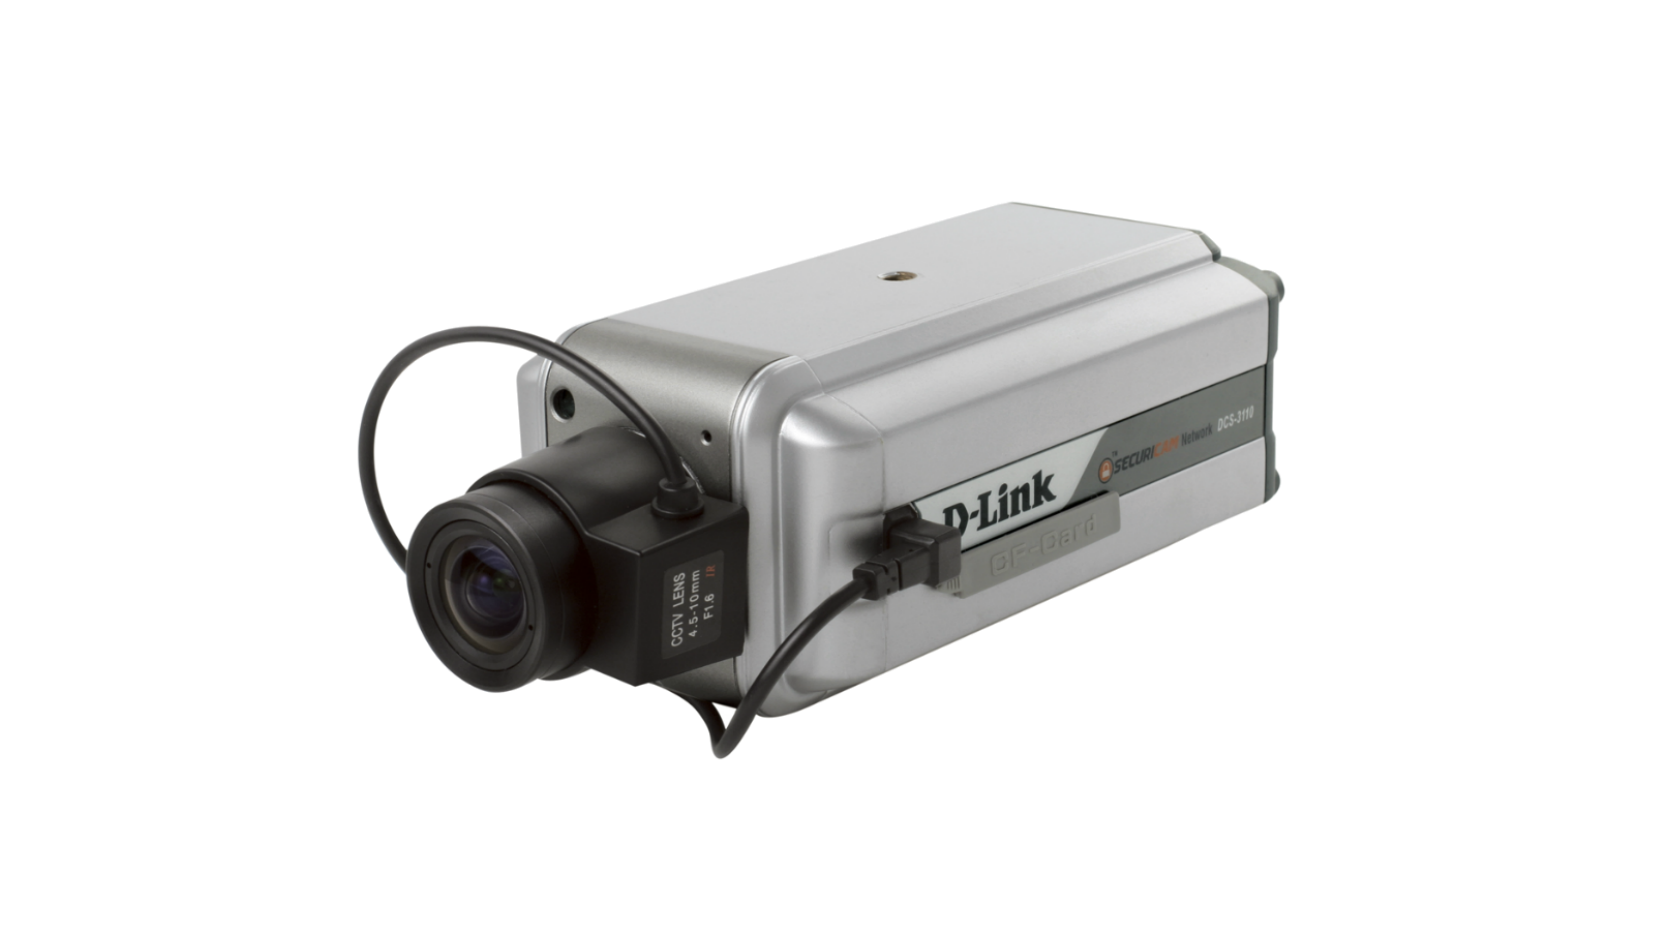 D-Link DCS-3110 Fixed Megapixel PoE Network Camera